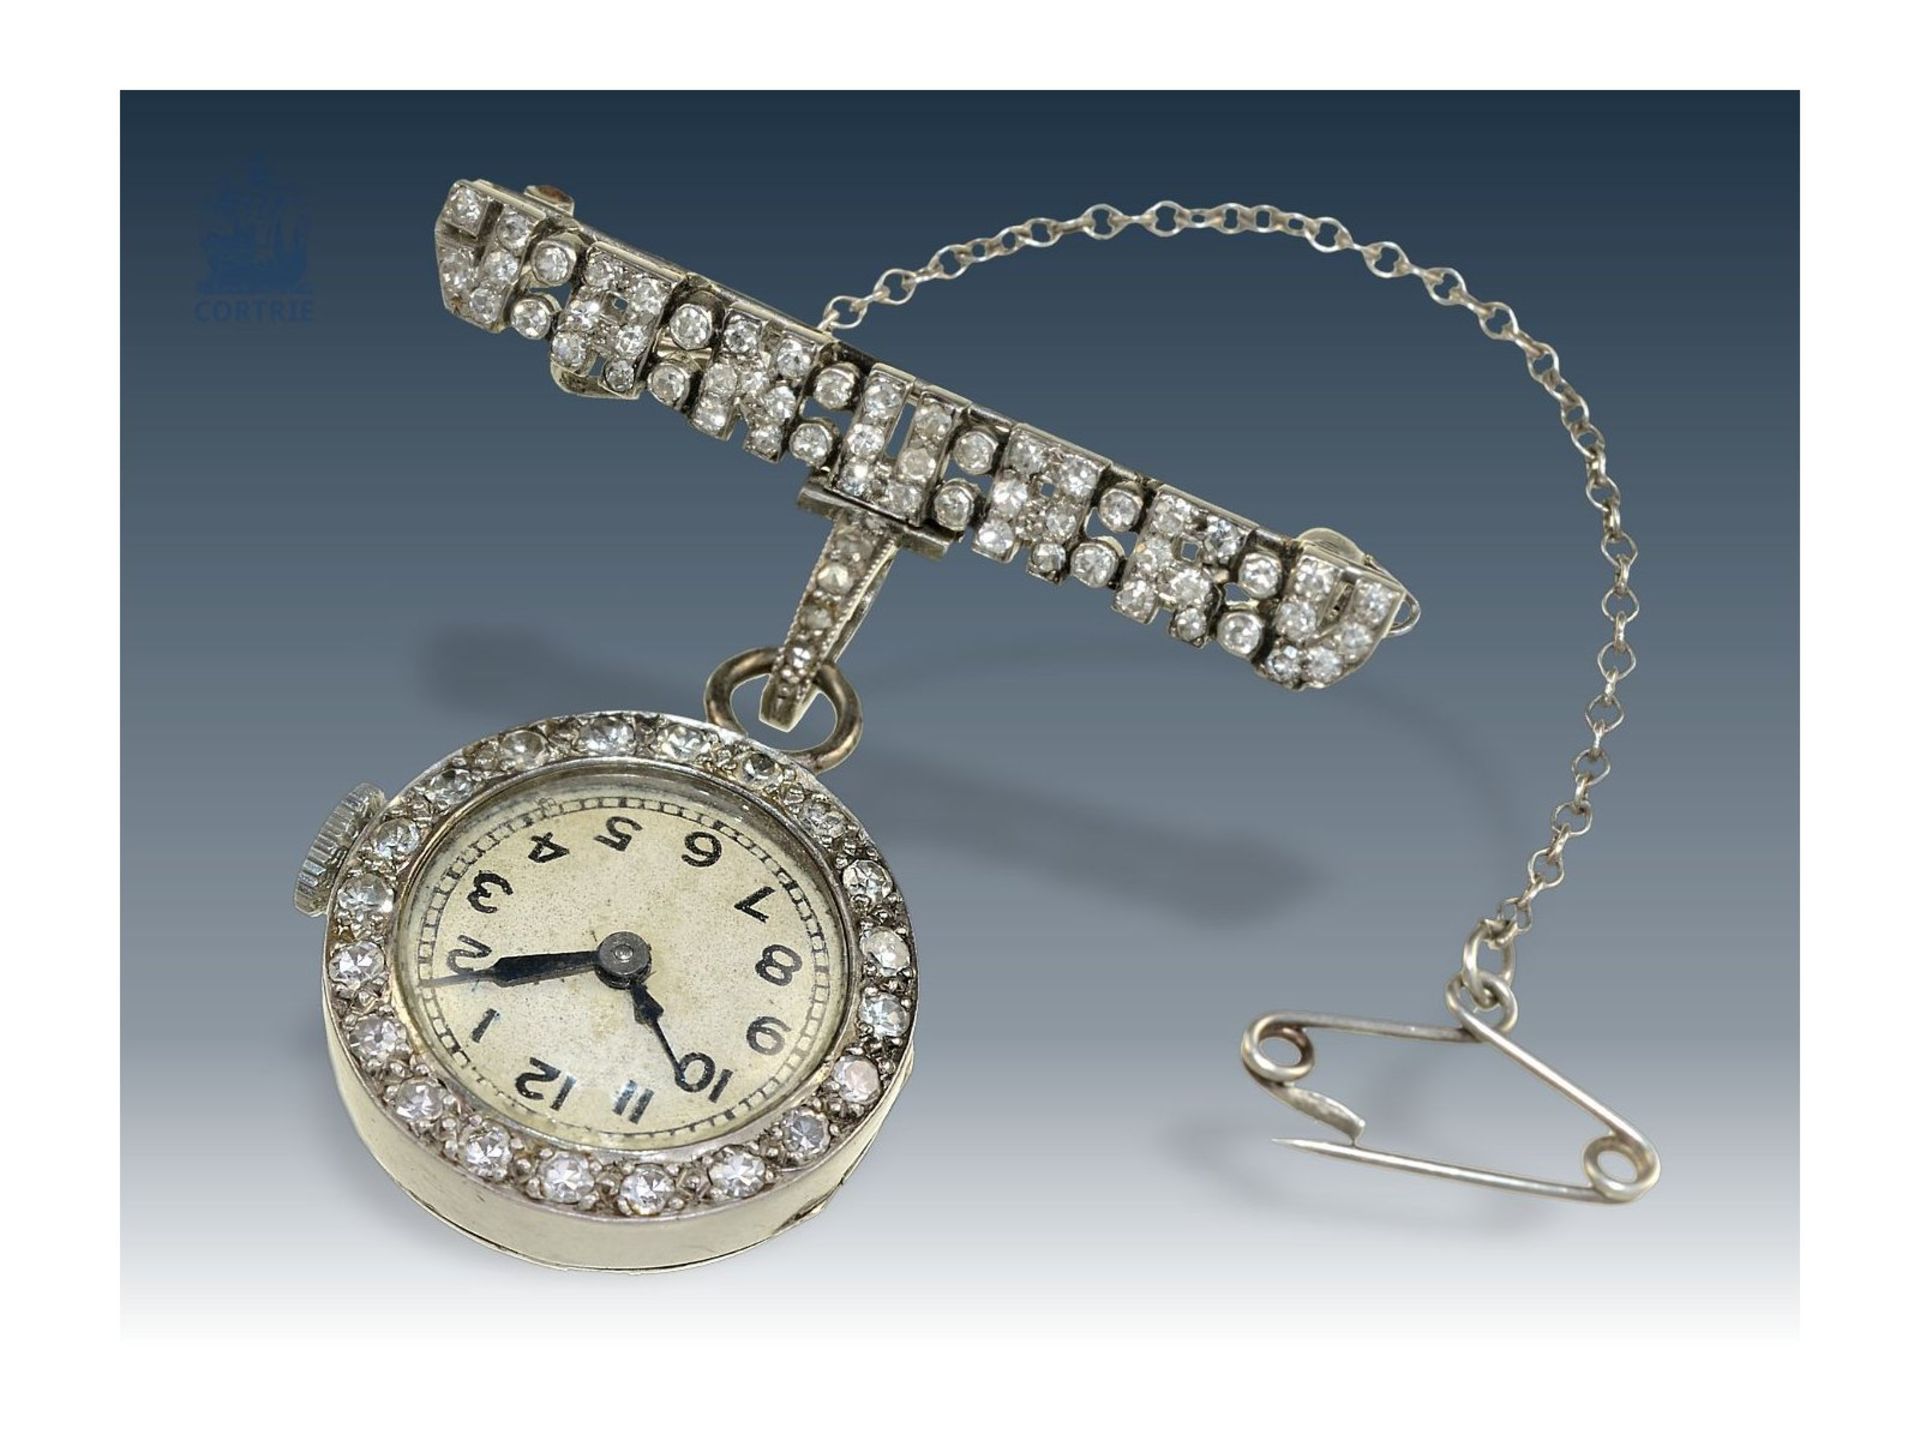 Anhängeuhr/Broschenuhr: seltene und hochfeine Art déco Diamant-Uhr mit Platingehäuse und Brosche - Bild 4 aus 4